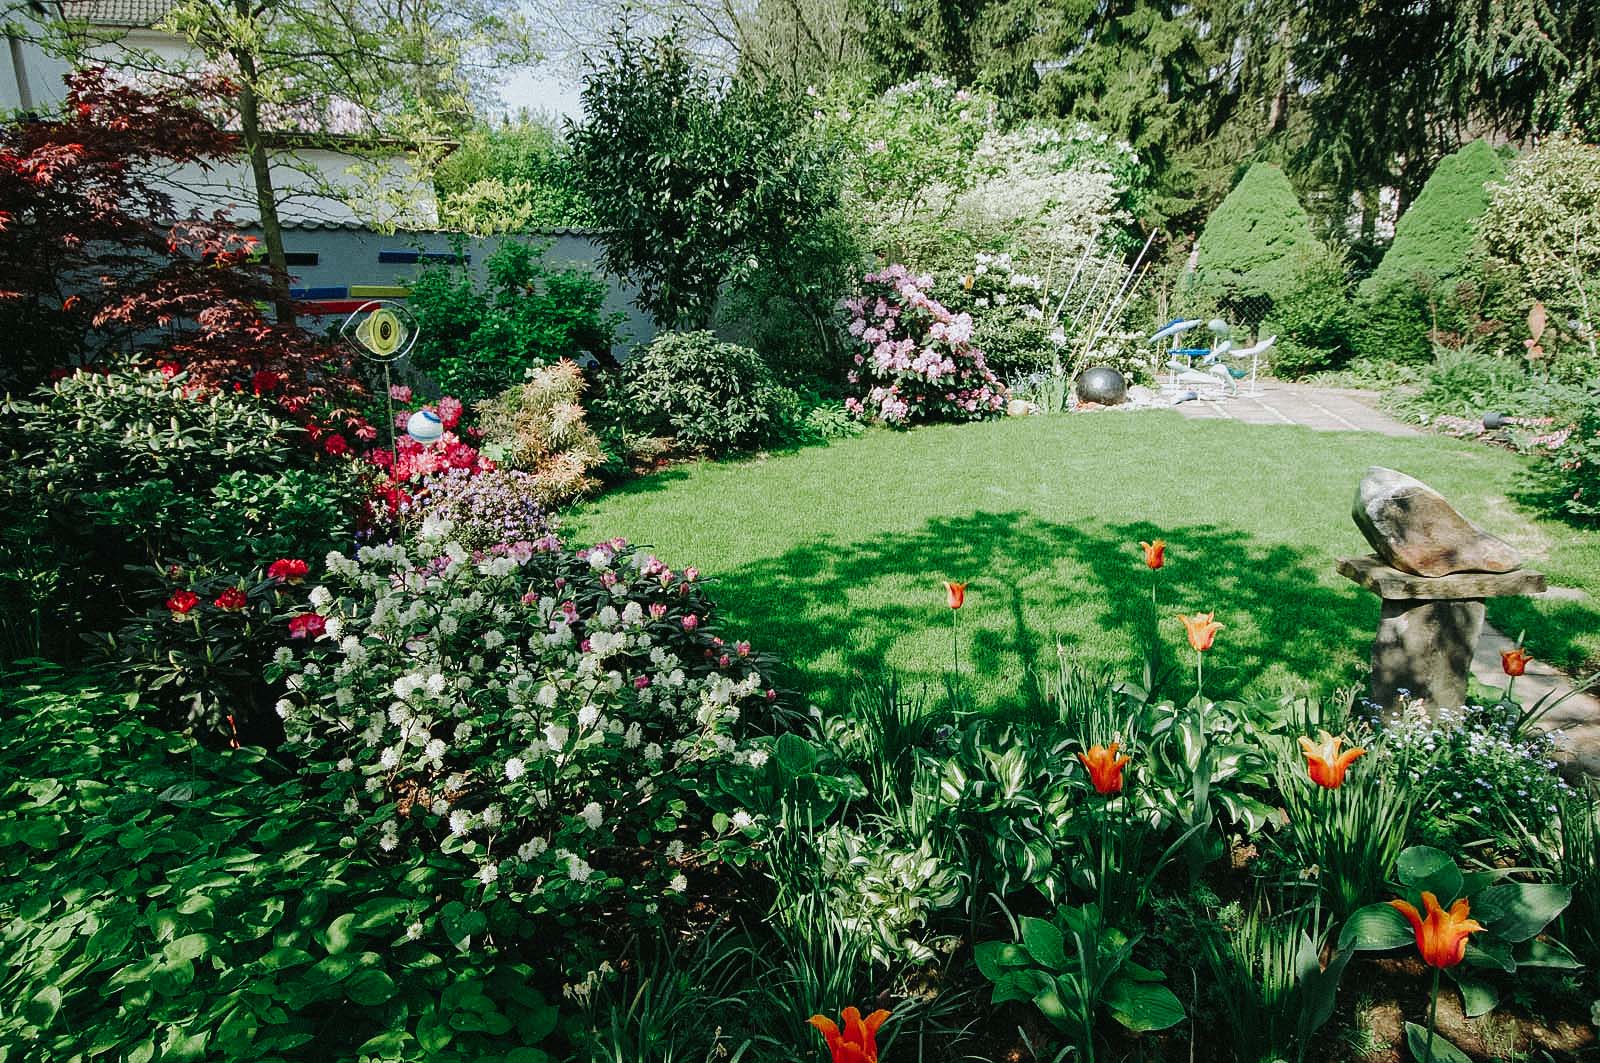 Ein kleiner Privatgarten mit runder Rasenfläche, dichter Staudenbepflanzung mit Deko-Elementen, Formgehölzen sowie Kunstobjekte